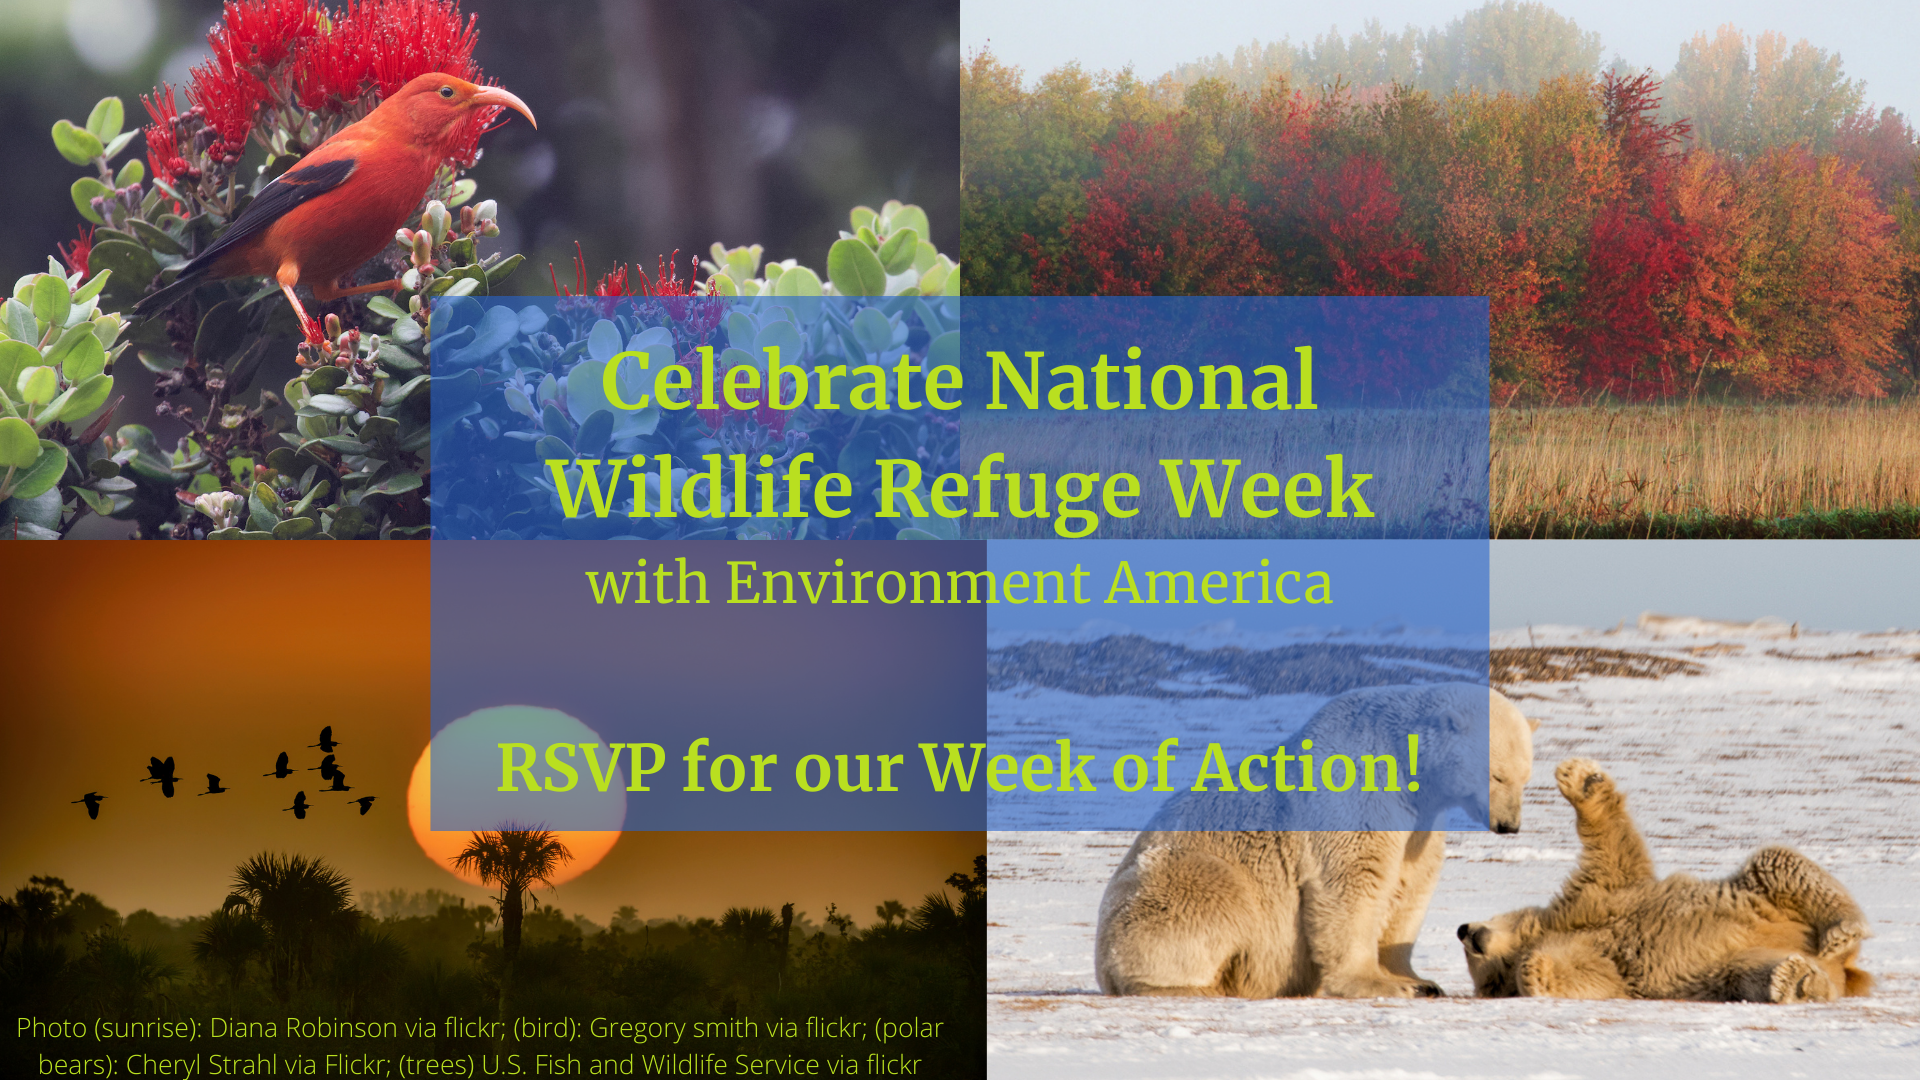 Take Action for National Wildlife Refuge Week